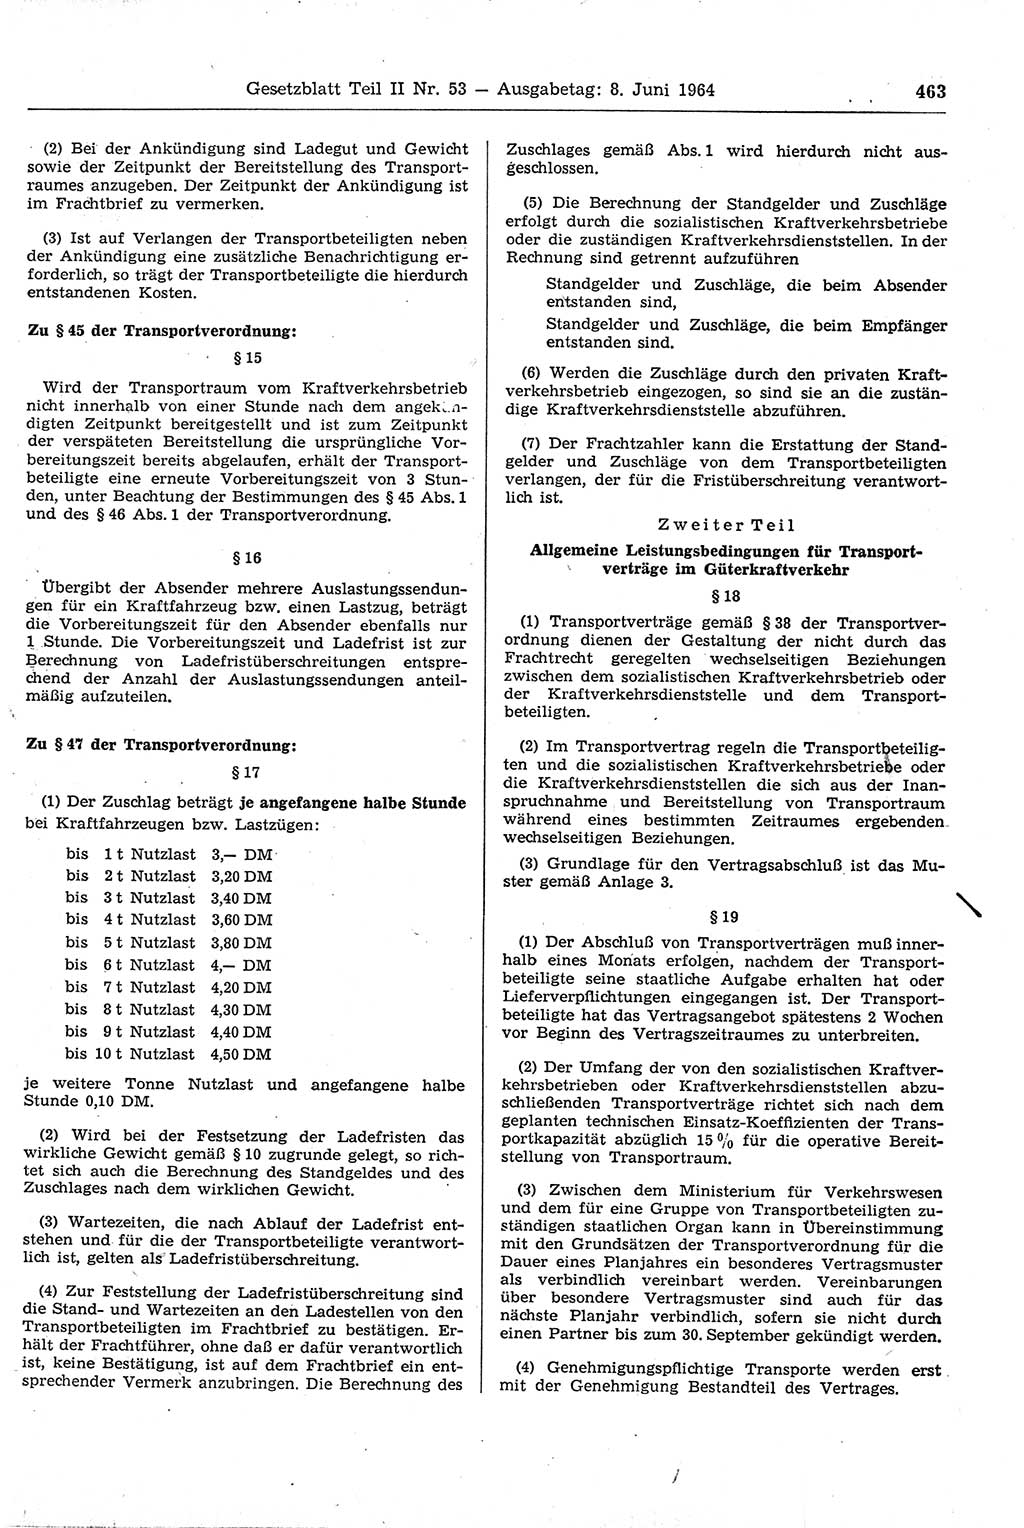 Gesetzblatt (GBl.) der Deutschen Demokratischen Republik (DDR) Teil ⅠⅠ 1964, Seite 463 (GBl. DDR ⅠⅠ 1964, S. 463)